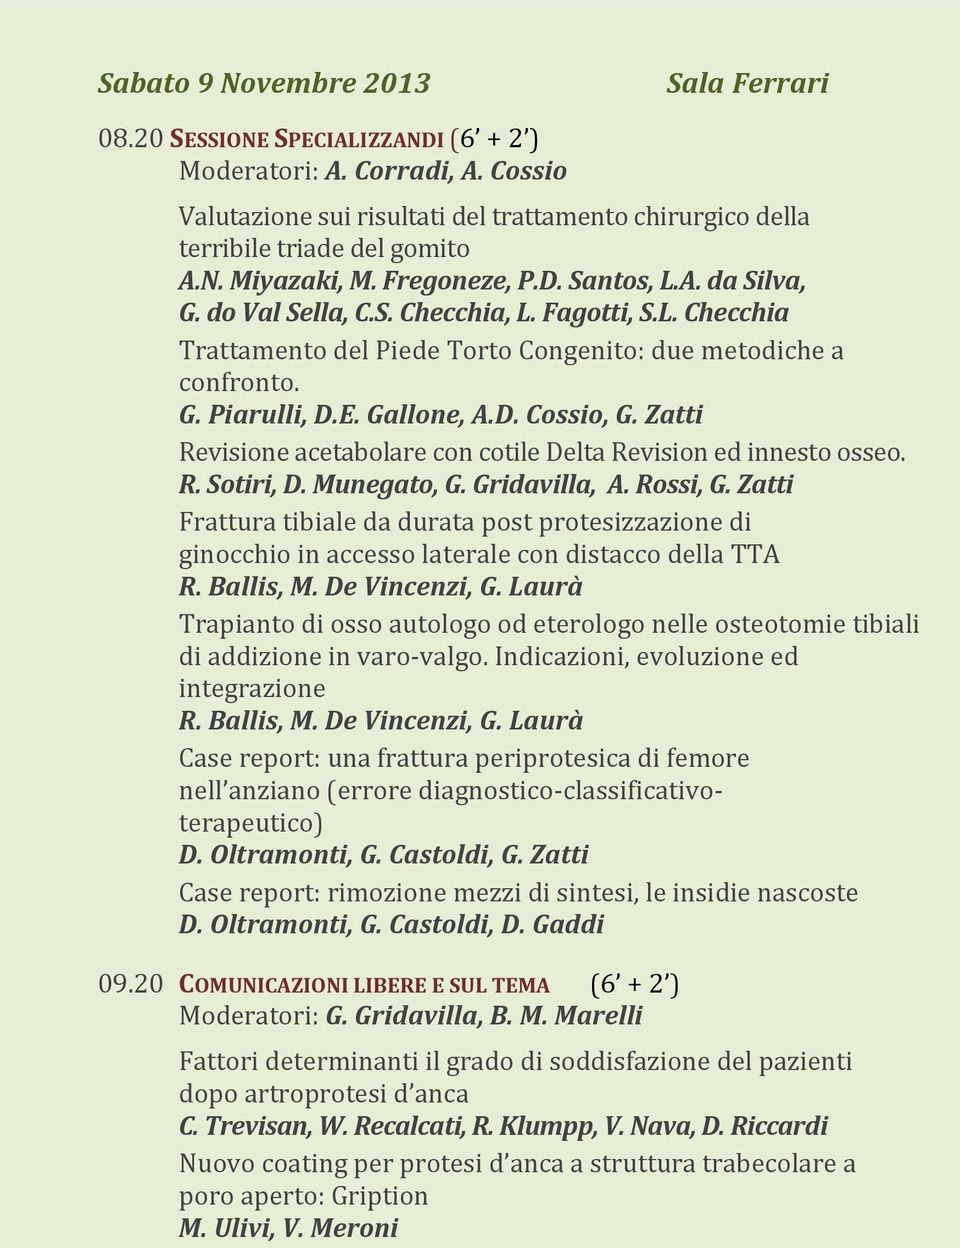 Zatti Revisione acetabolare con cotile Delta Revision ed innesto osseo. R. Sotiri, D. Munegato, G. Gridavilla, A. Rossi, G.